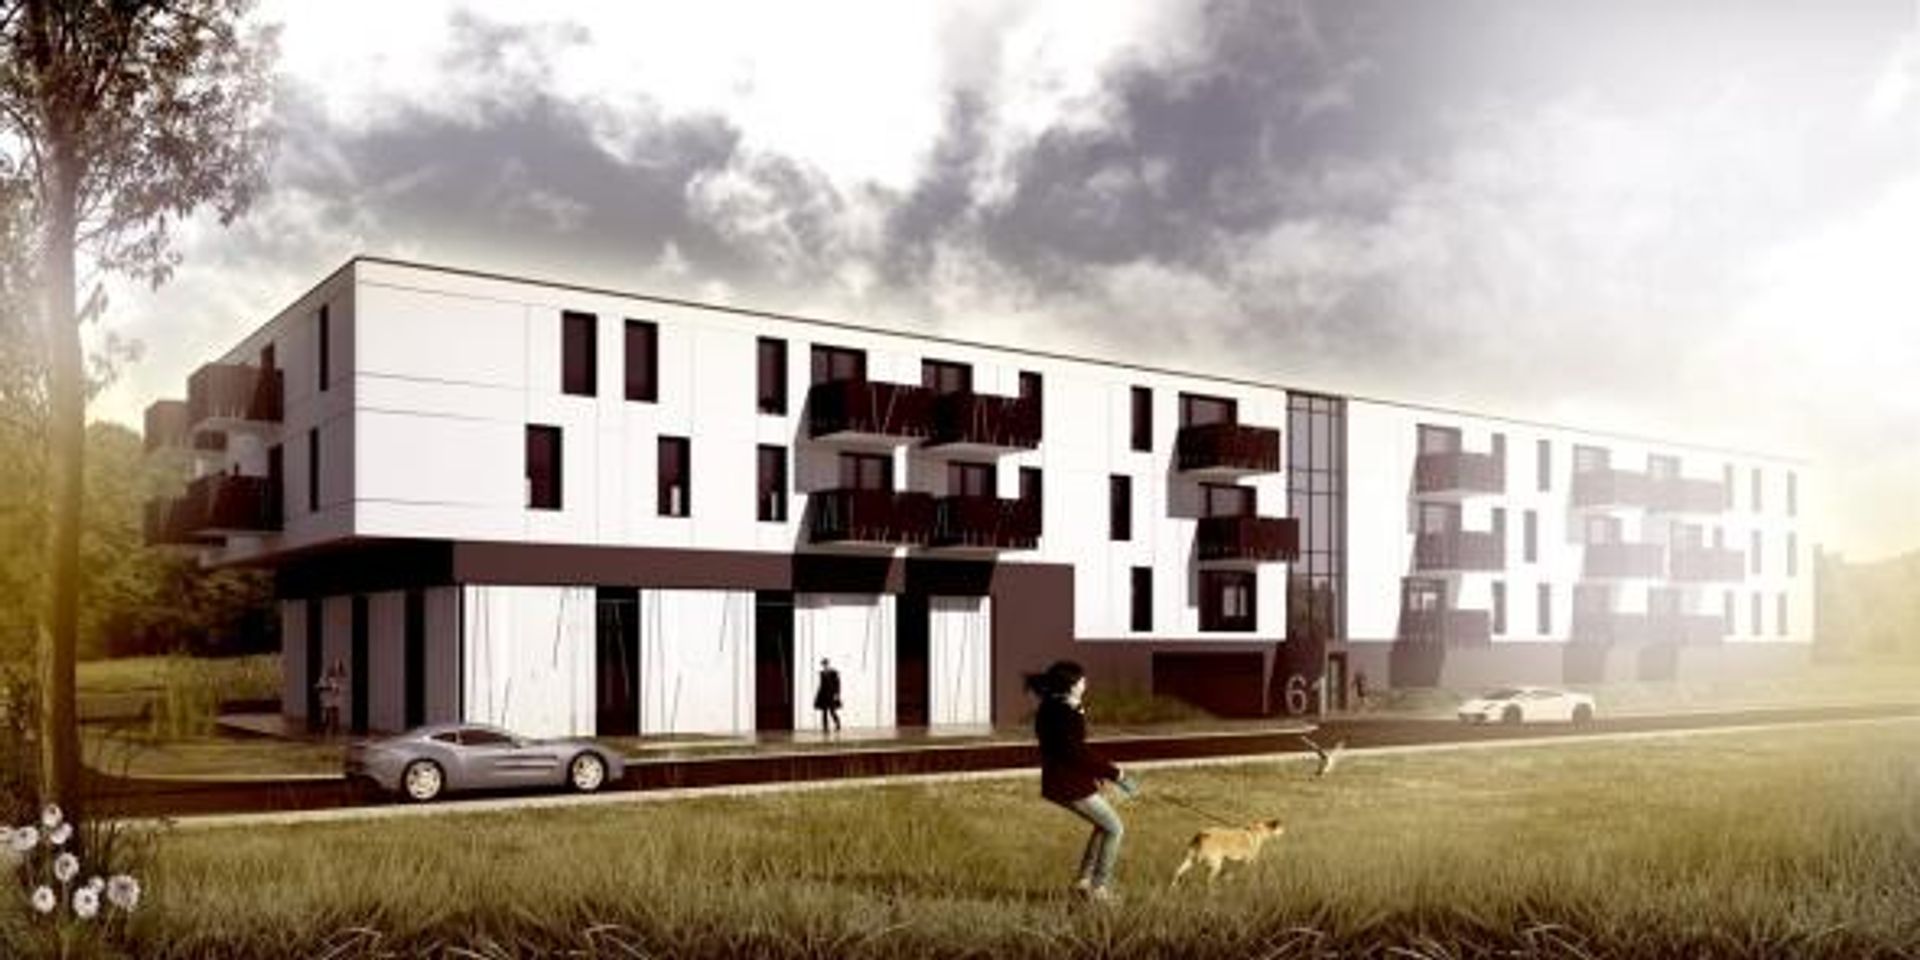  Comex wybuduje nowy budynek mieszkalno-usługowy na Psim Polu 